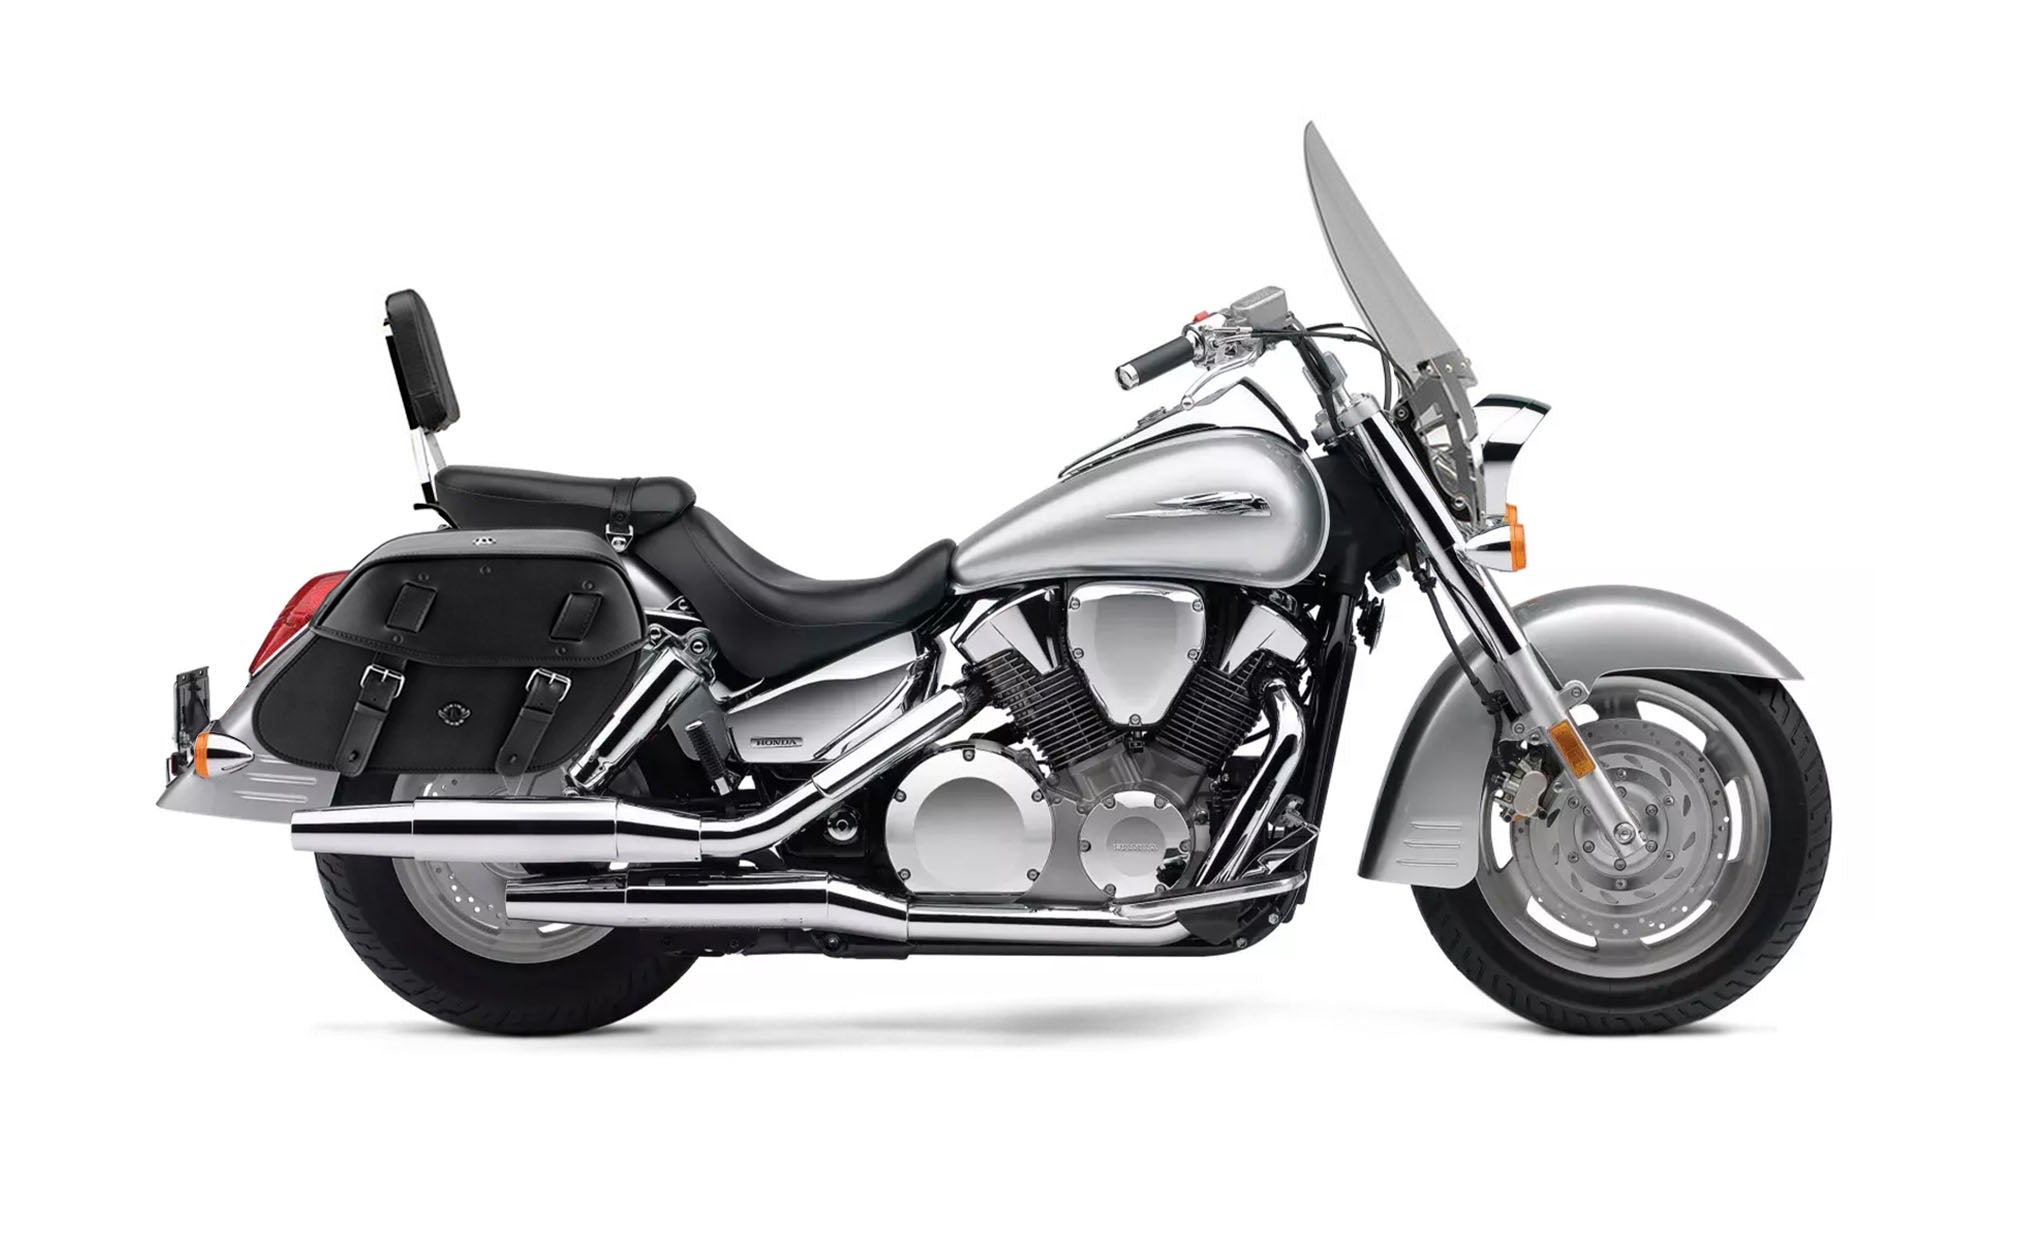 Viking Odin Large Honda Vtx 1300 T Tourer Leather Motorcycle Saddlebags on Bike Photo @expand